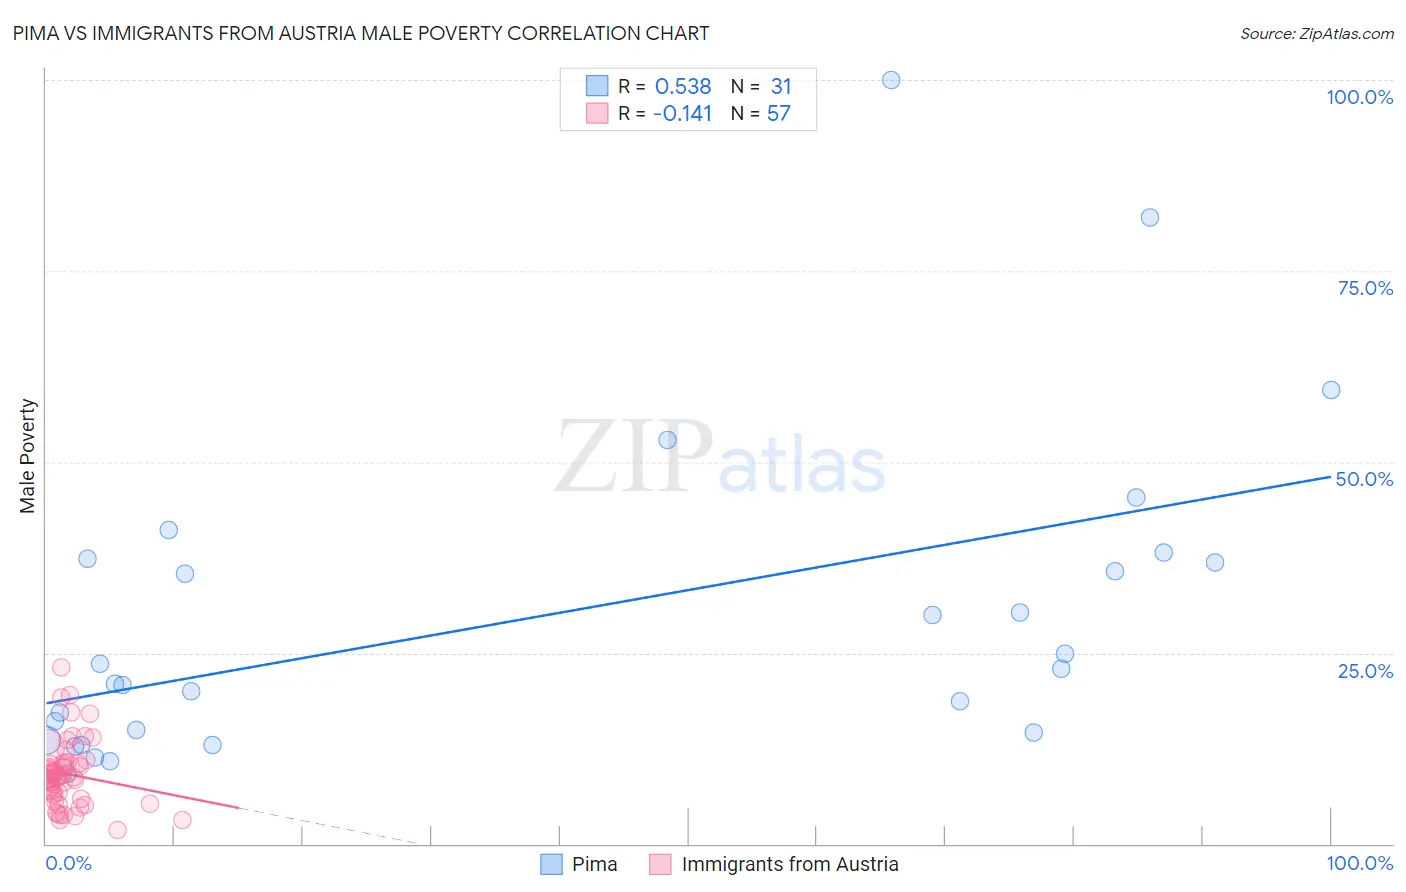 Pima vs Immigrants from Austria Male Poverty